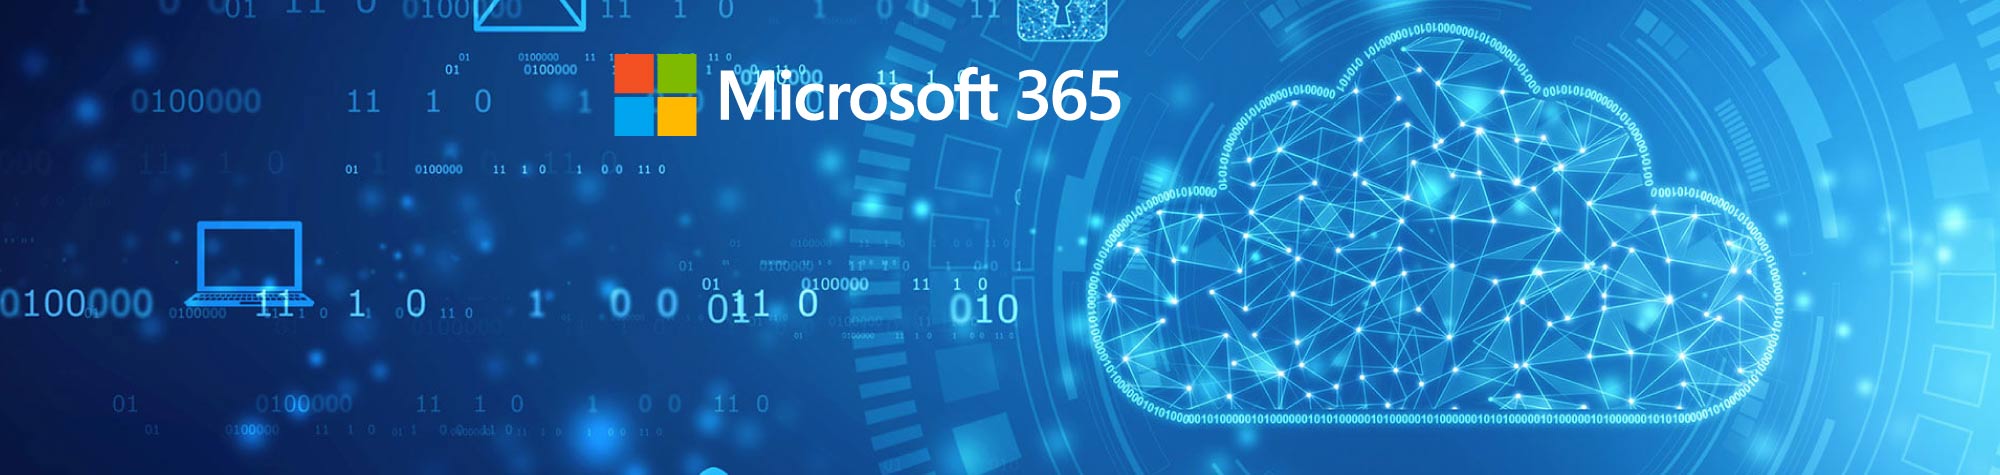 Como a Microsoft 365 ajuda na conformidade com a LGPD?